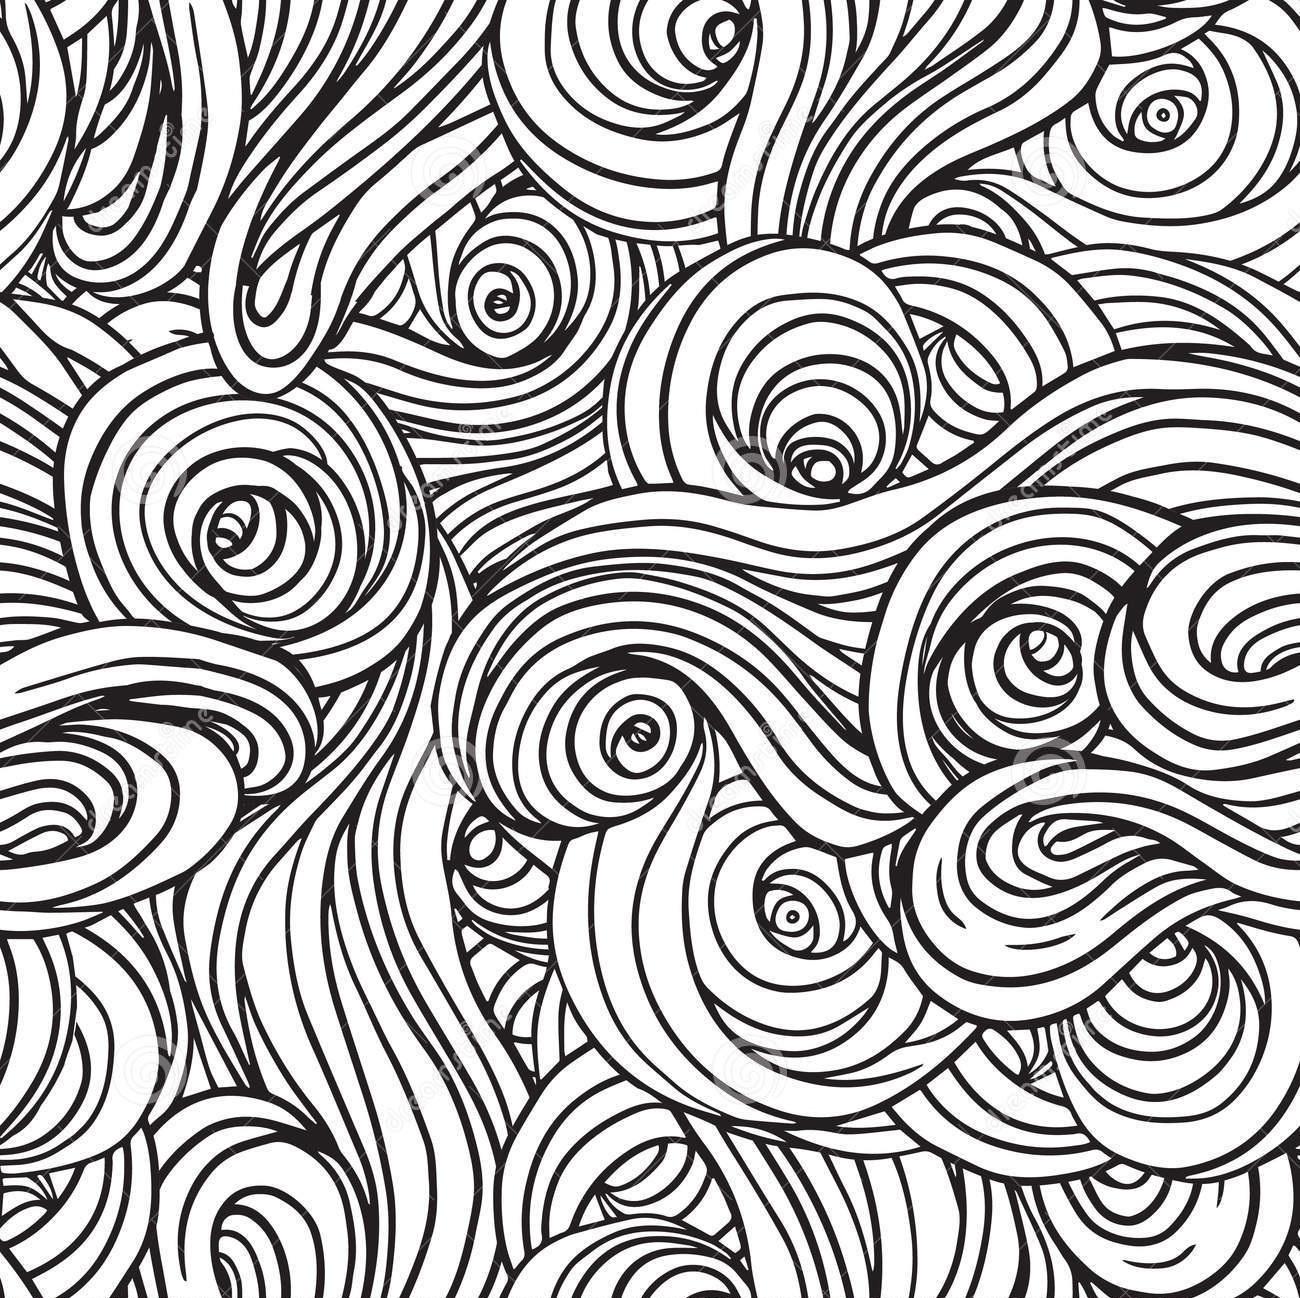 黒と白の壁紙パターン,パターン,ライン,モノクローム,設計,線画